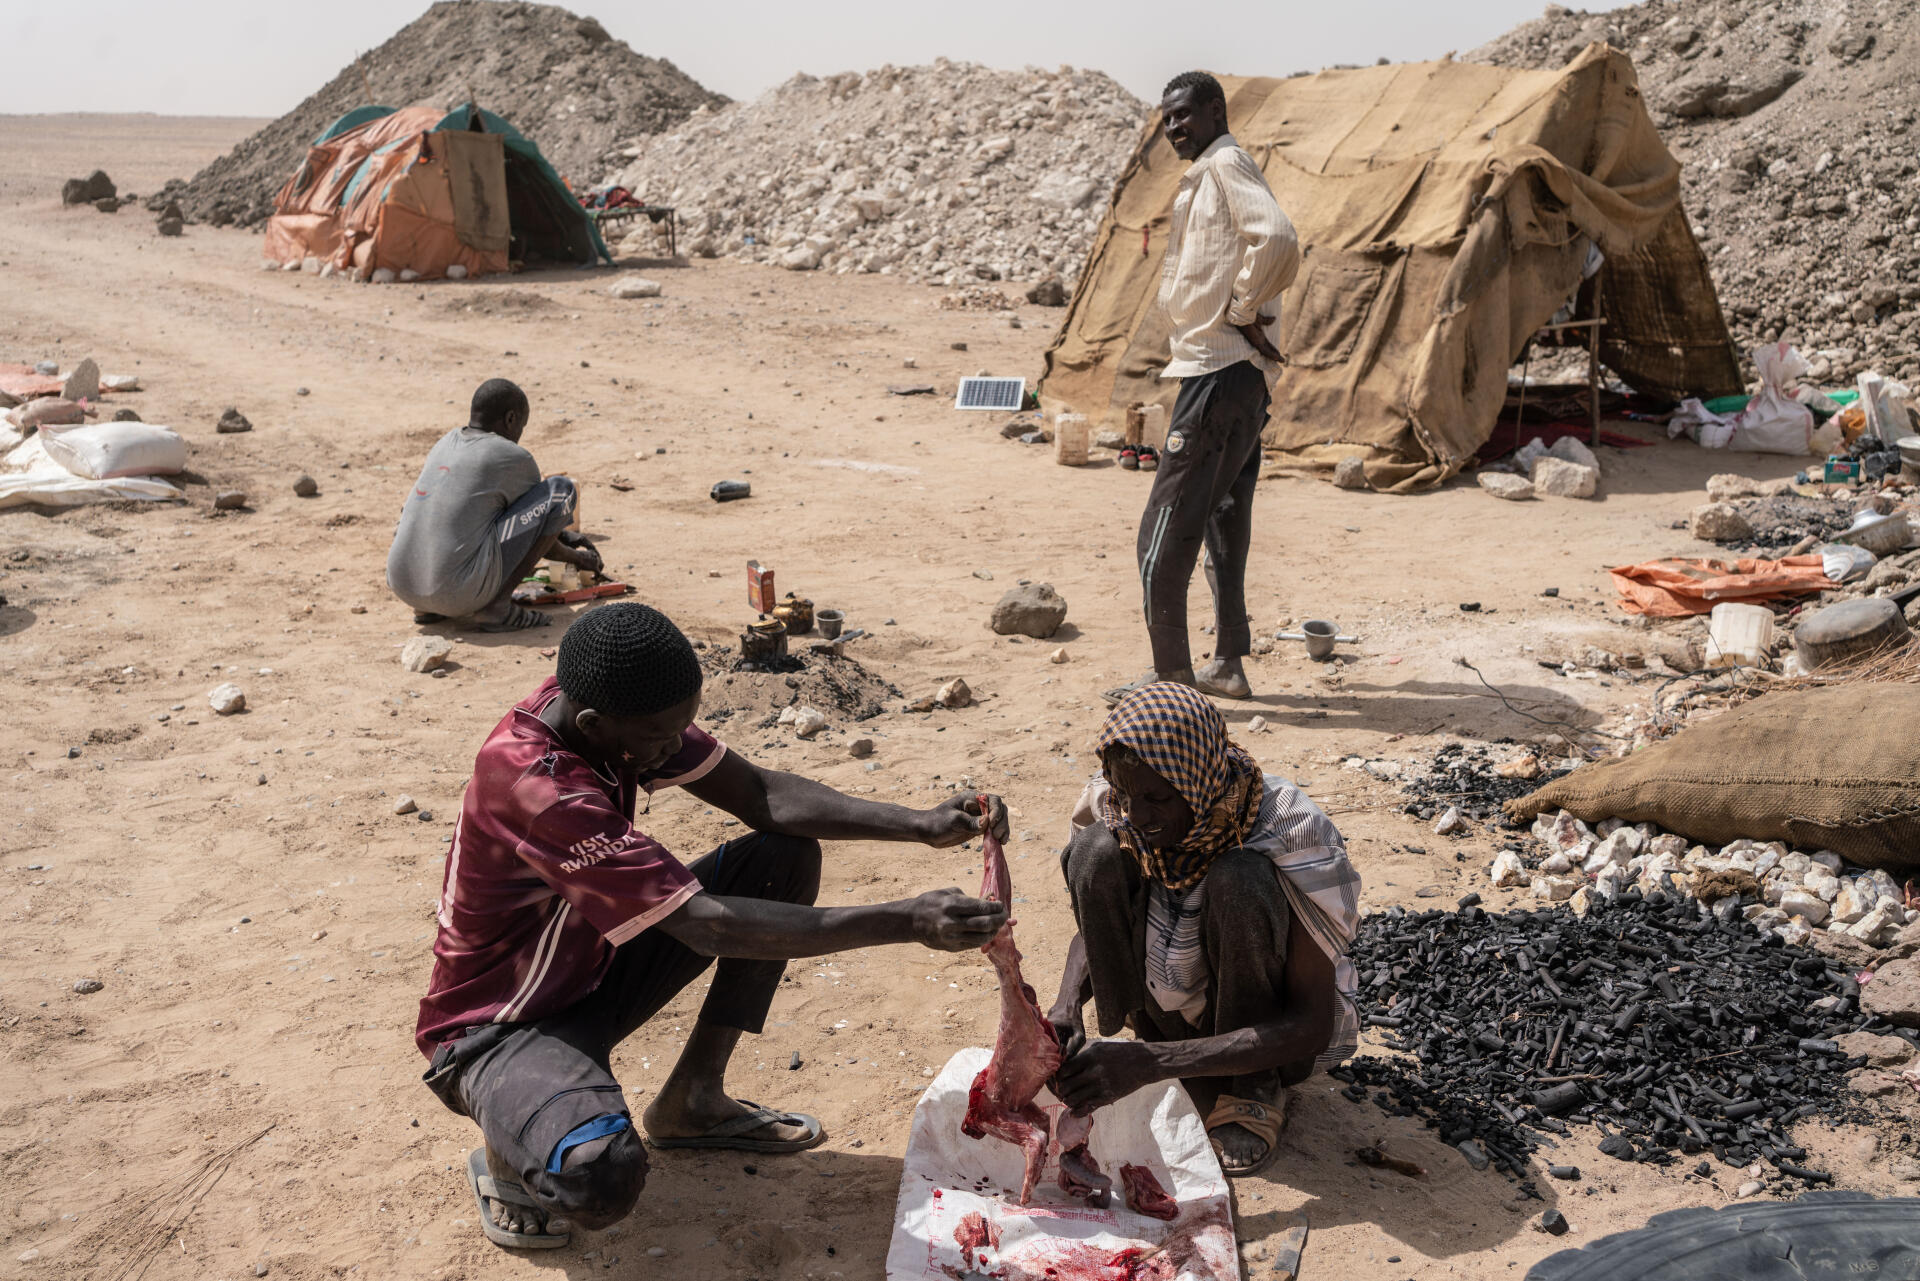 Des mineurs préparent un chat sauvage pour leur repas, dans le nord du Soudan, le 23 mars 2022